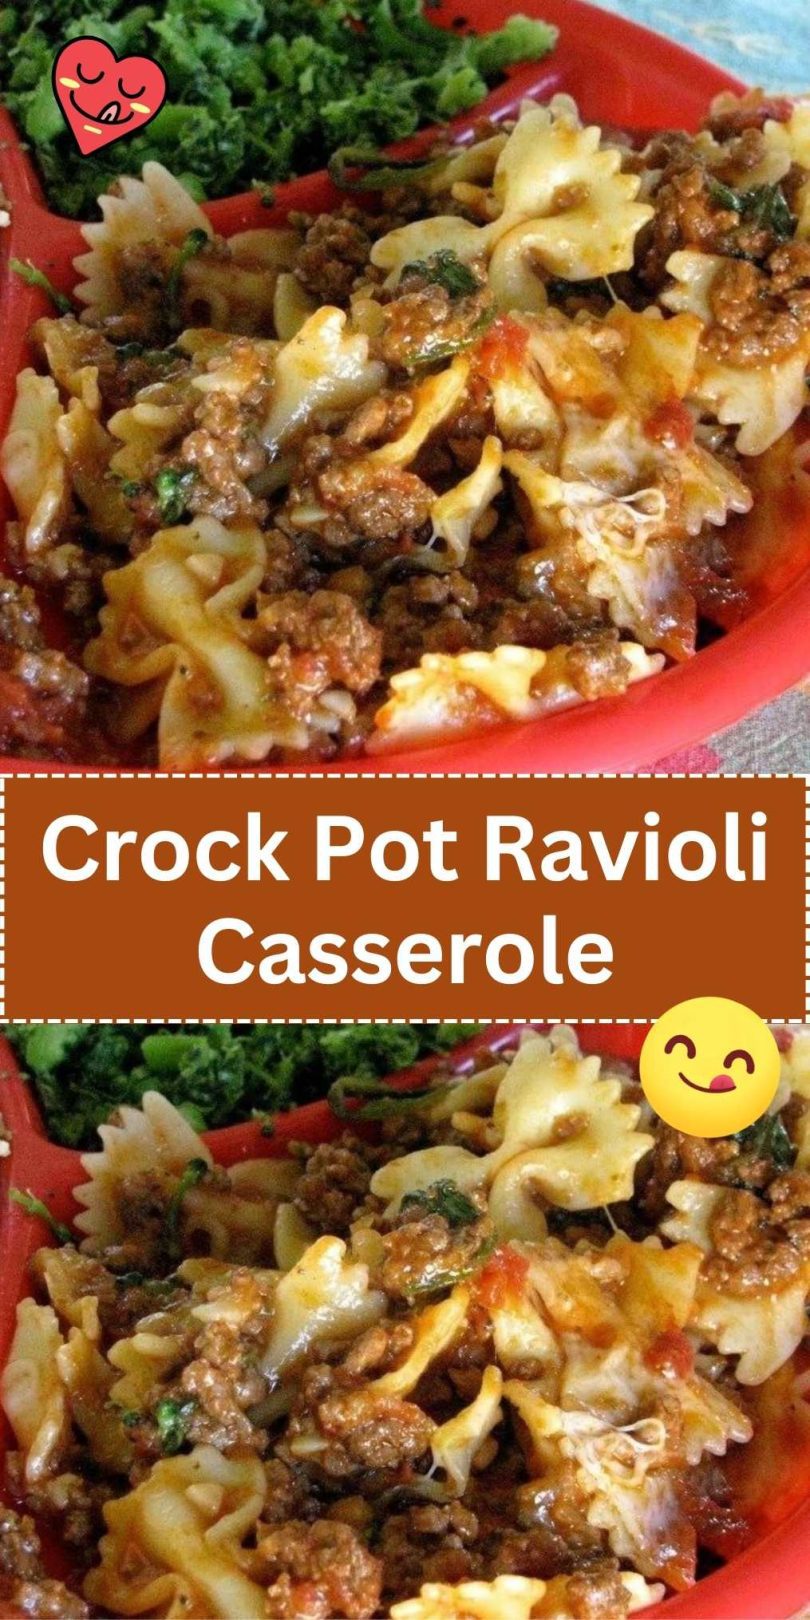 Crock Pot Ravioli Casserole